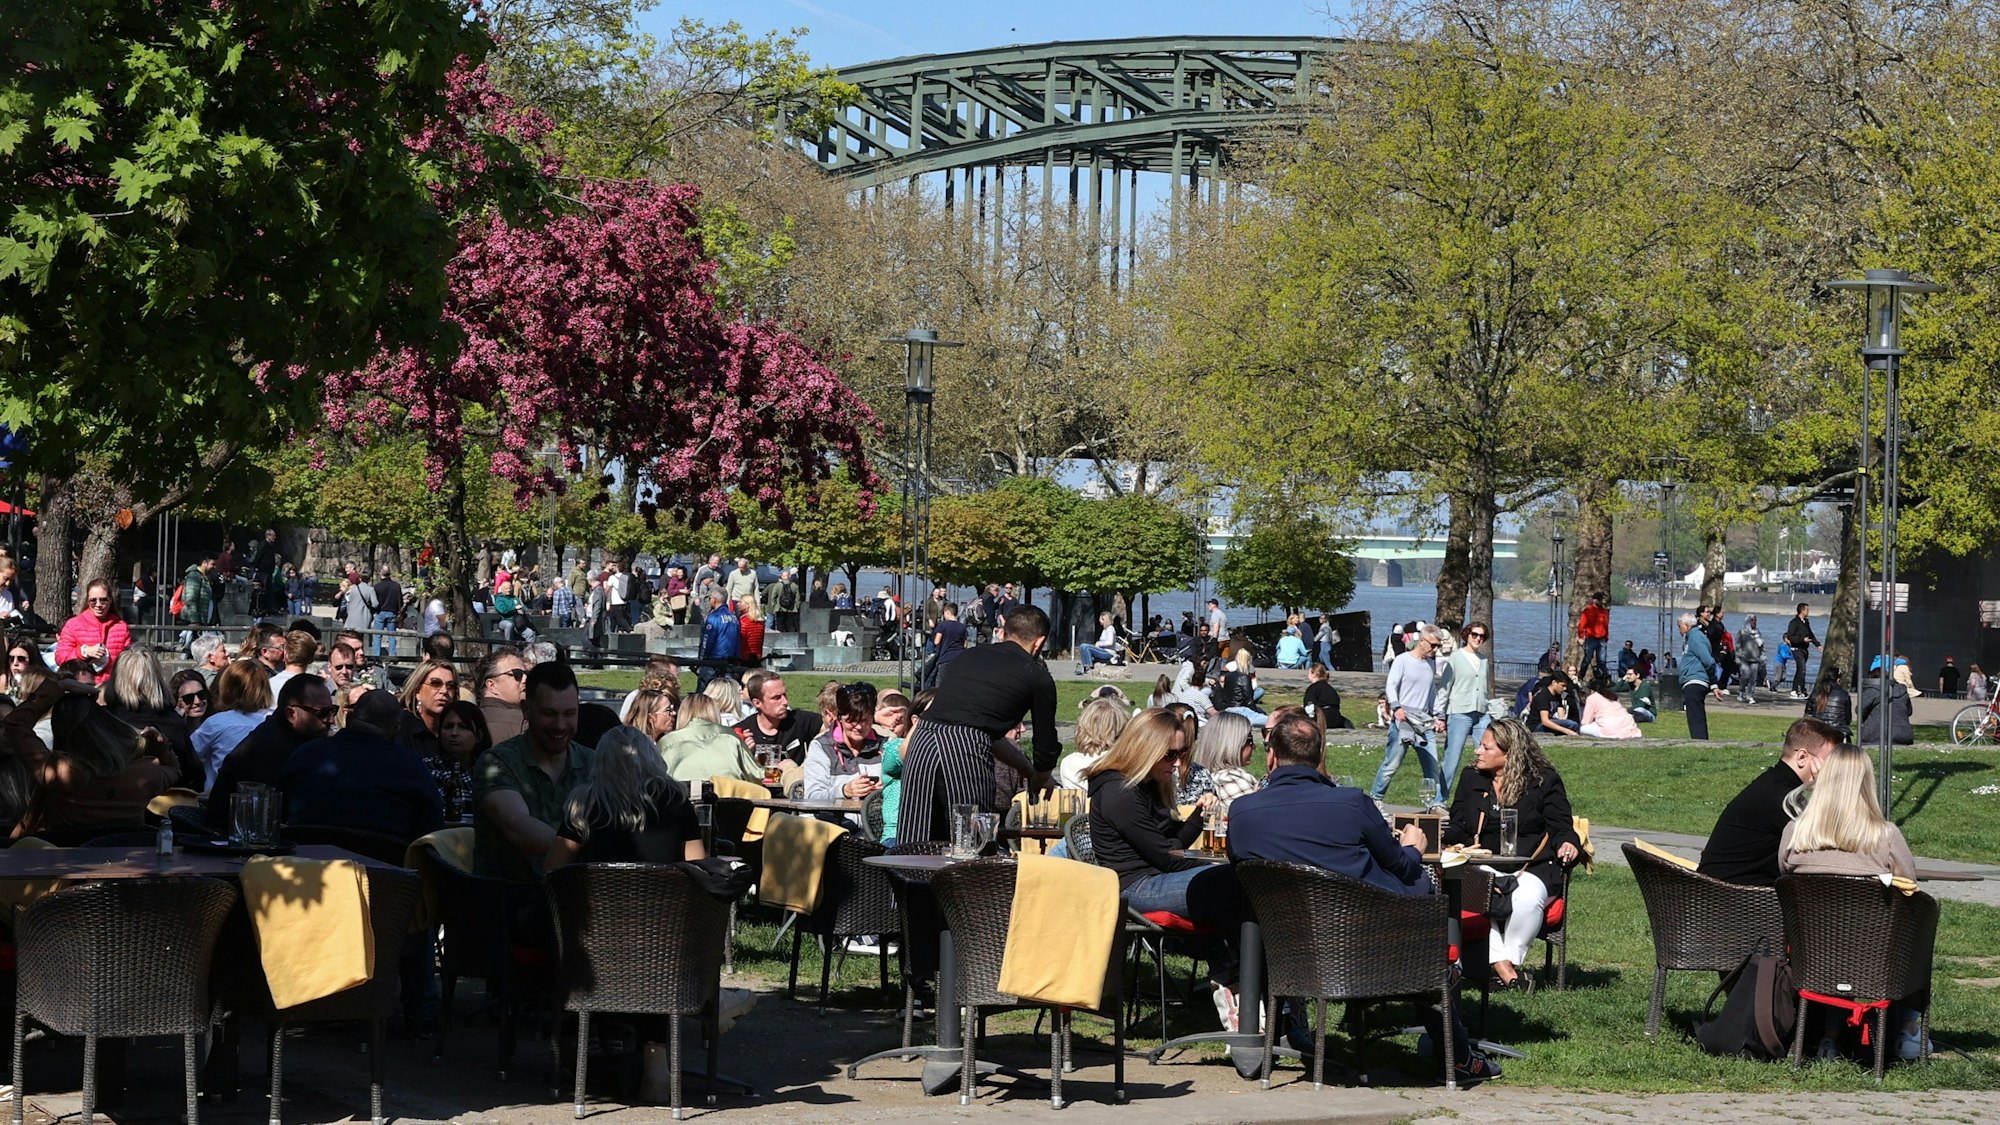 Volles Außengastro am Rhein bei schönem Wetter